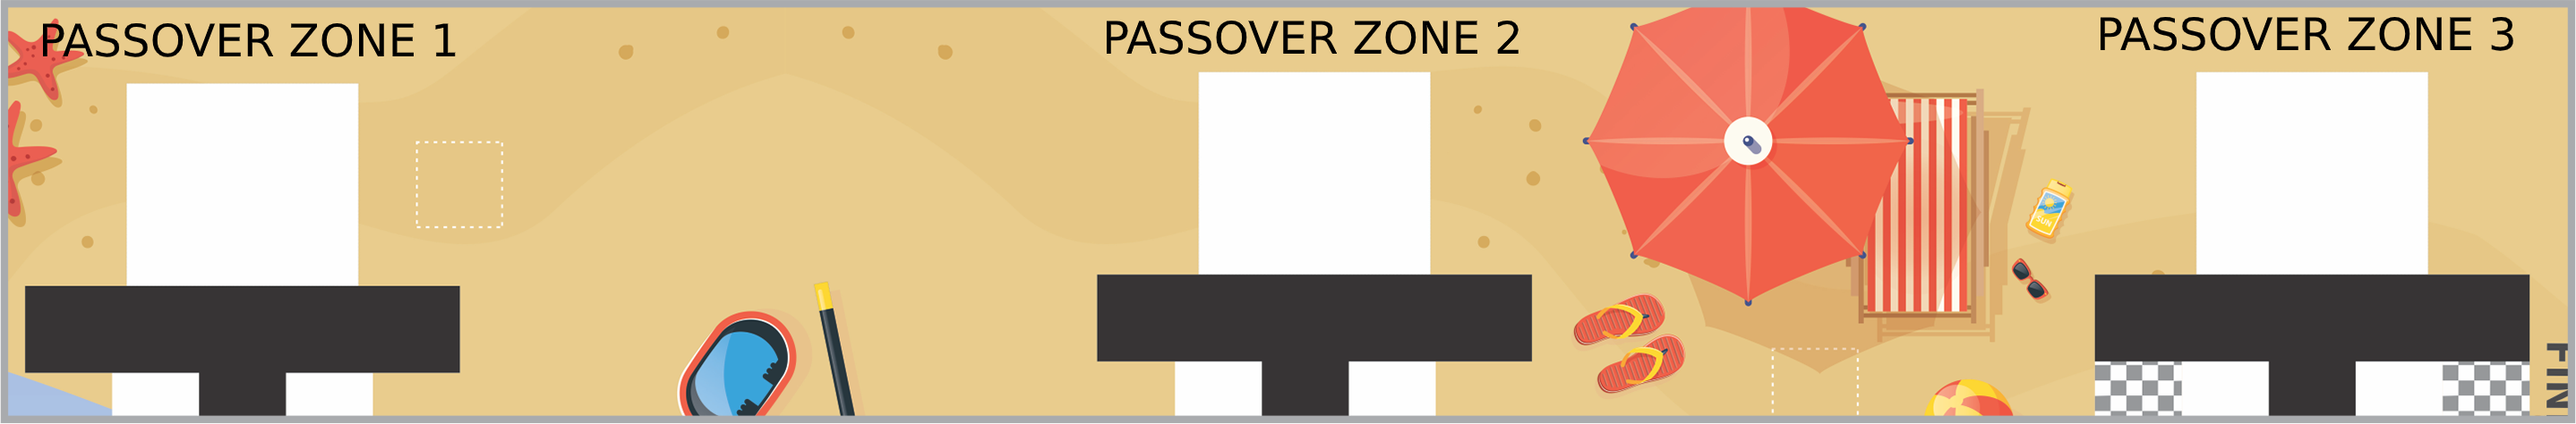 Passover Zone